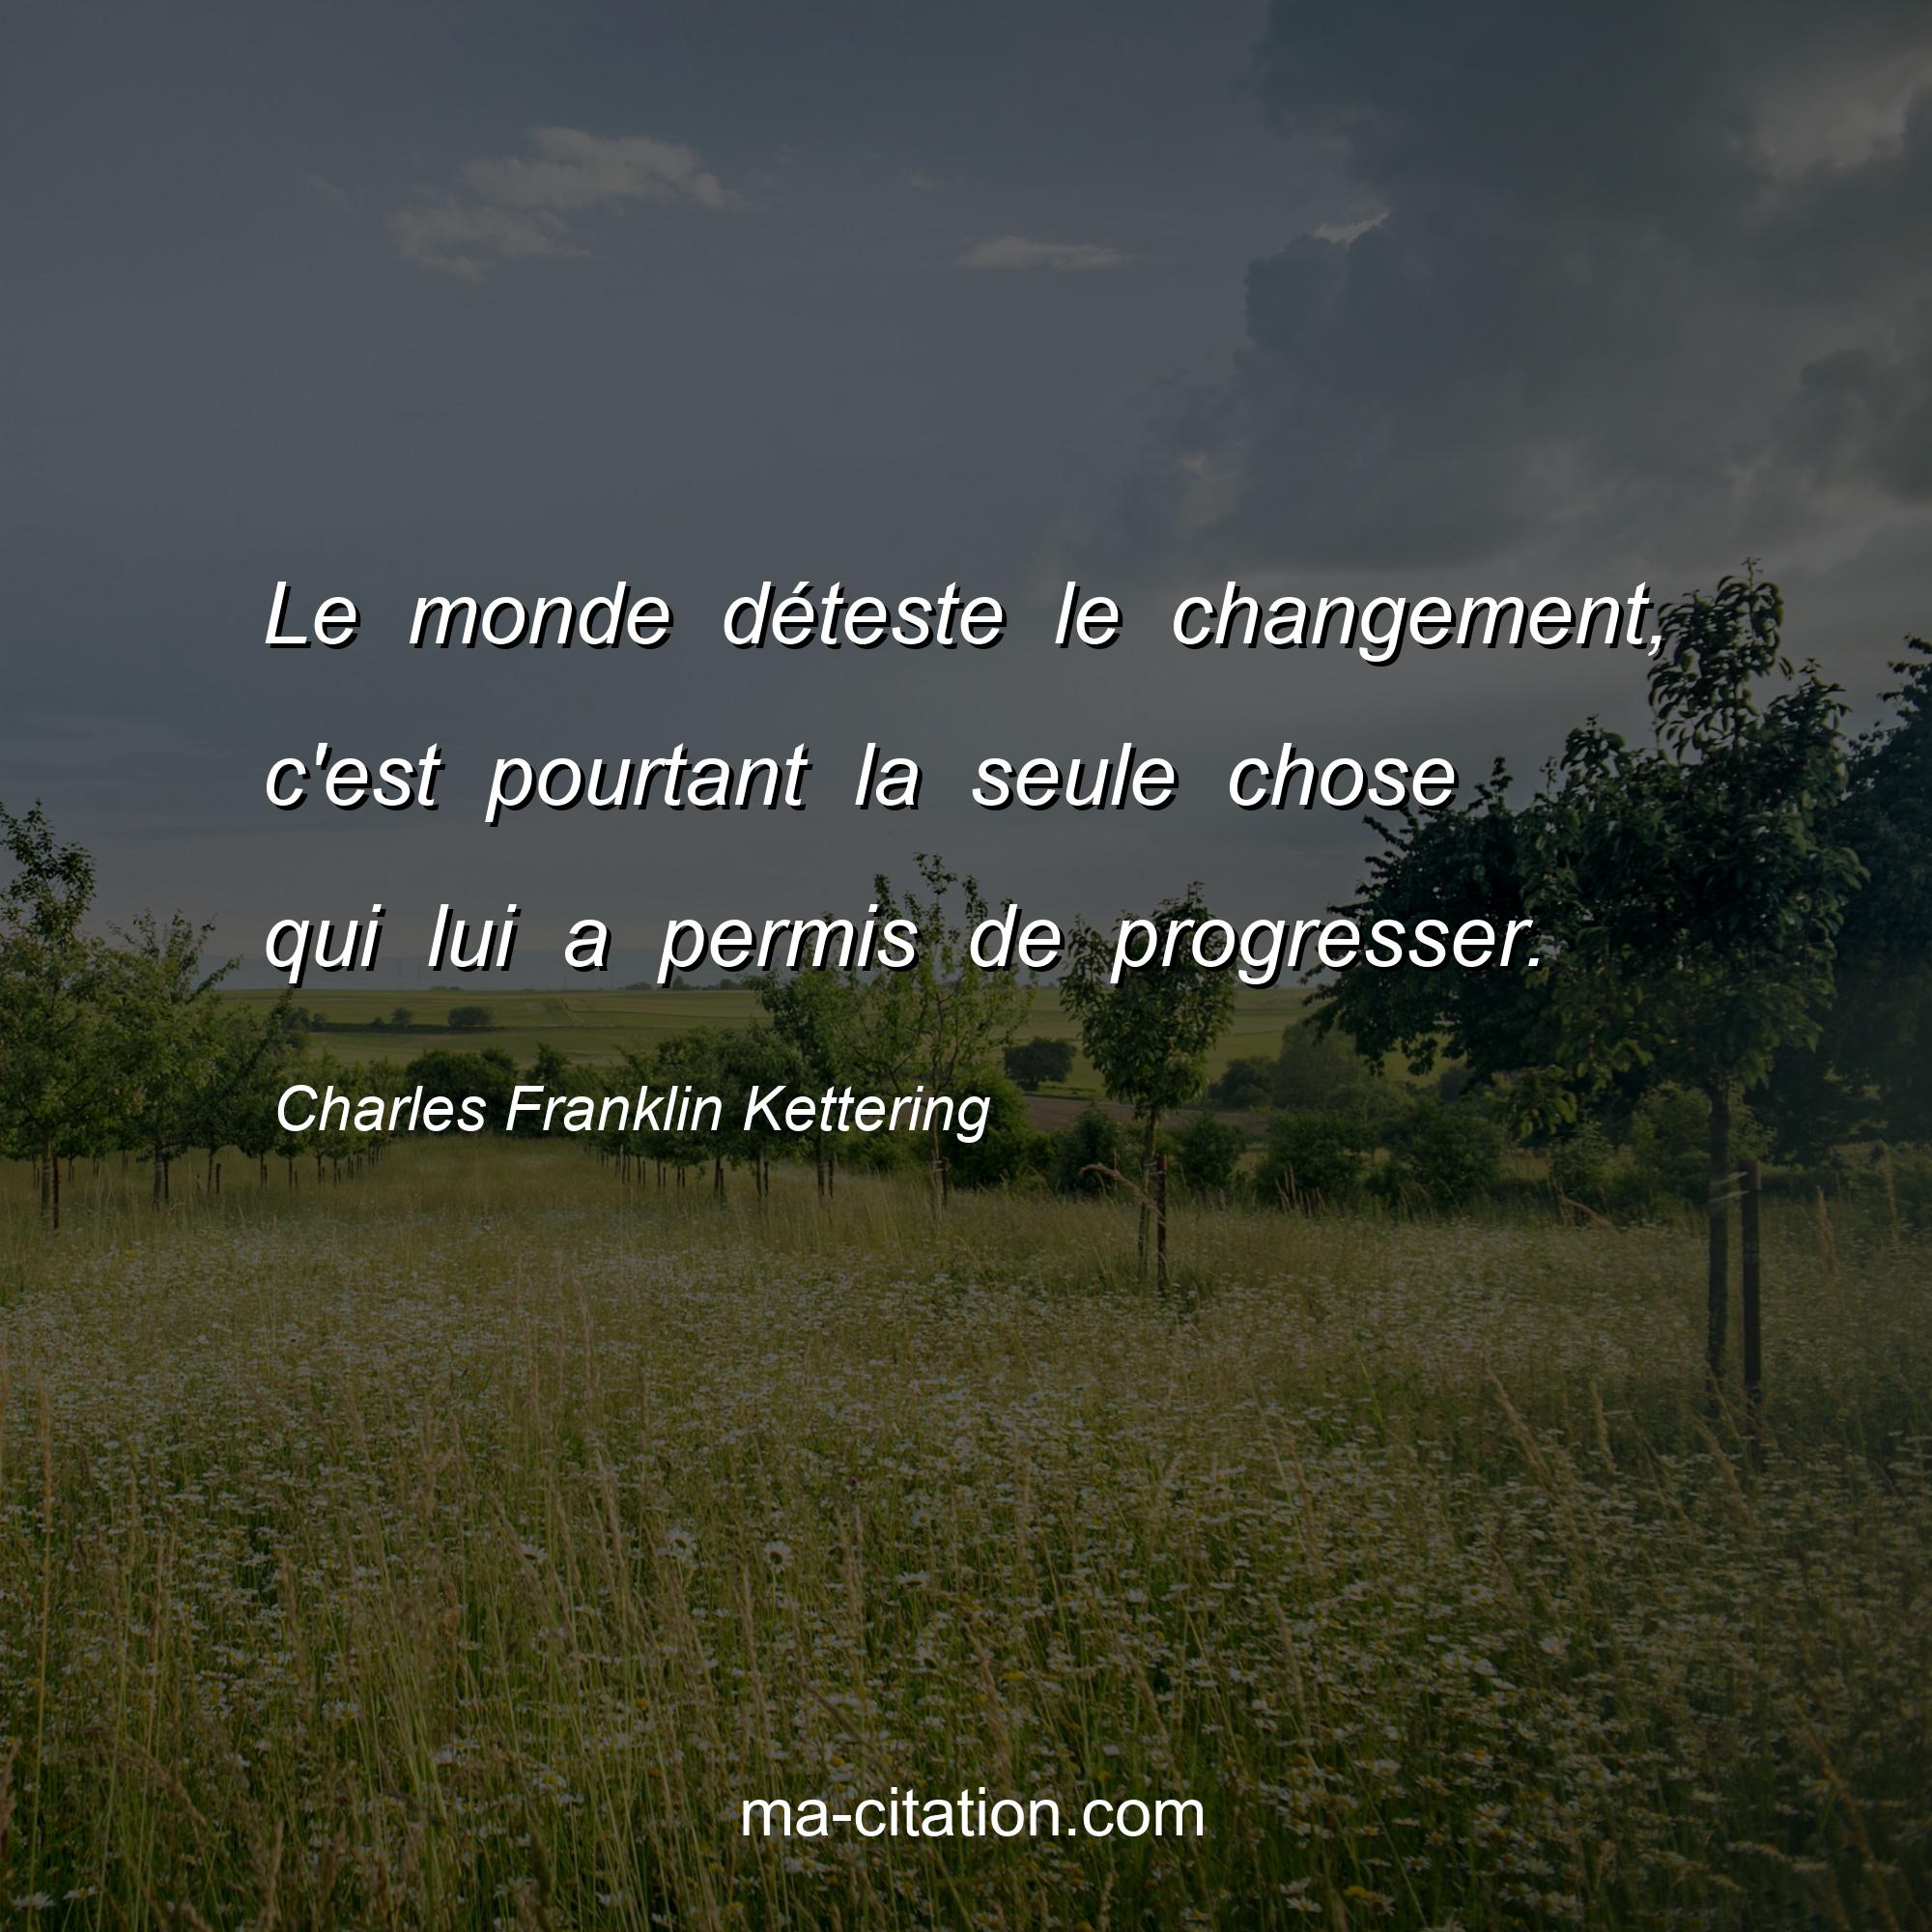 Charles F. Kettering : Le monde déteste le changement, c'est pourtant la seule chose qui lui a permis de progresser.